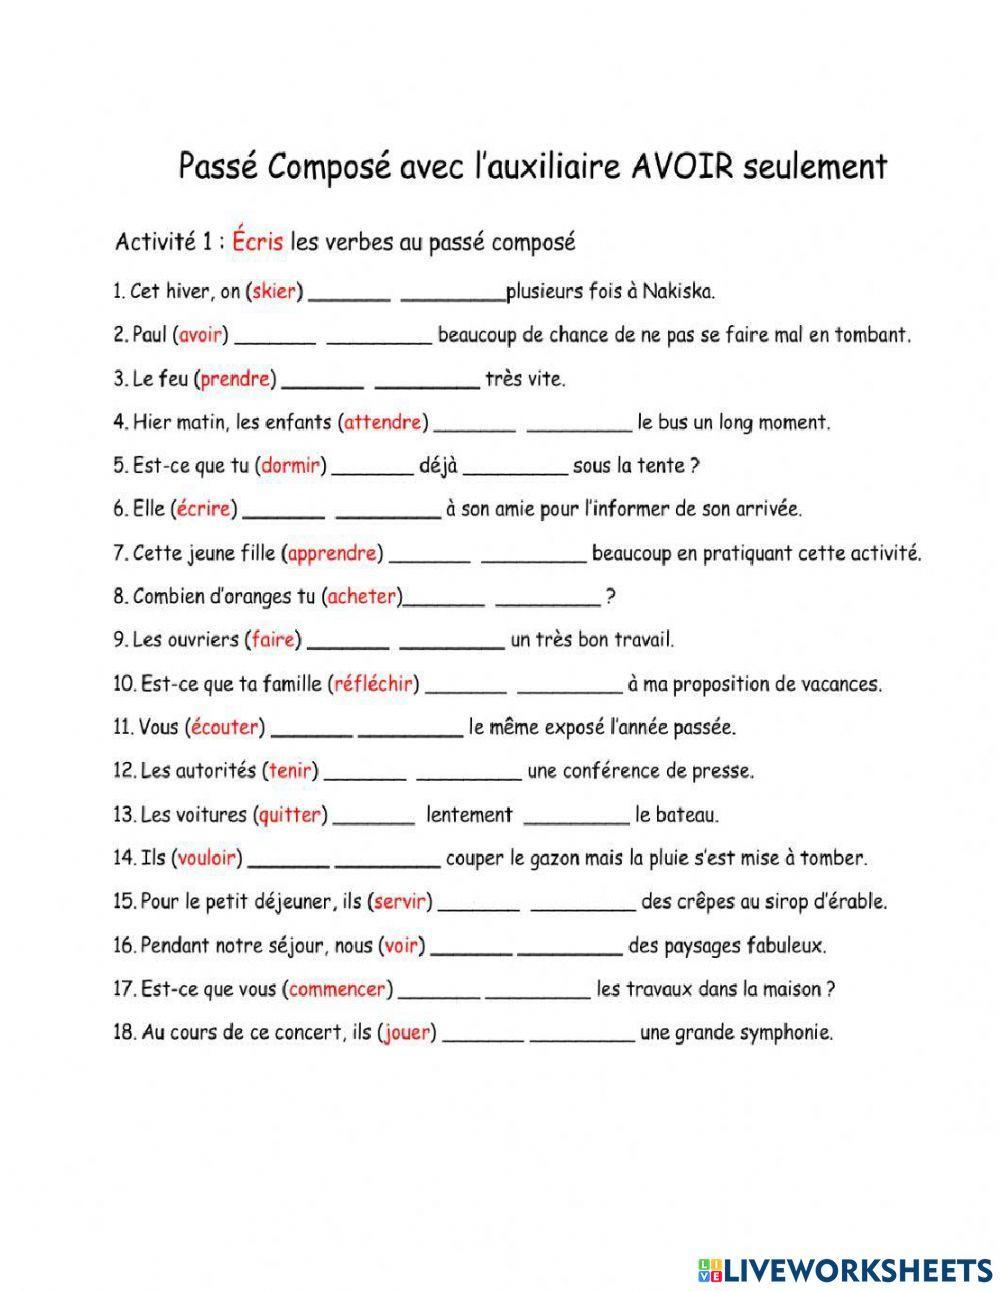 Passé composé exercise for CM2 | Live Worksheets